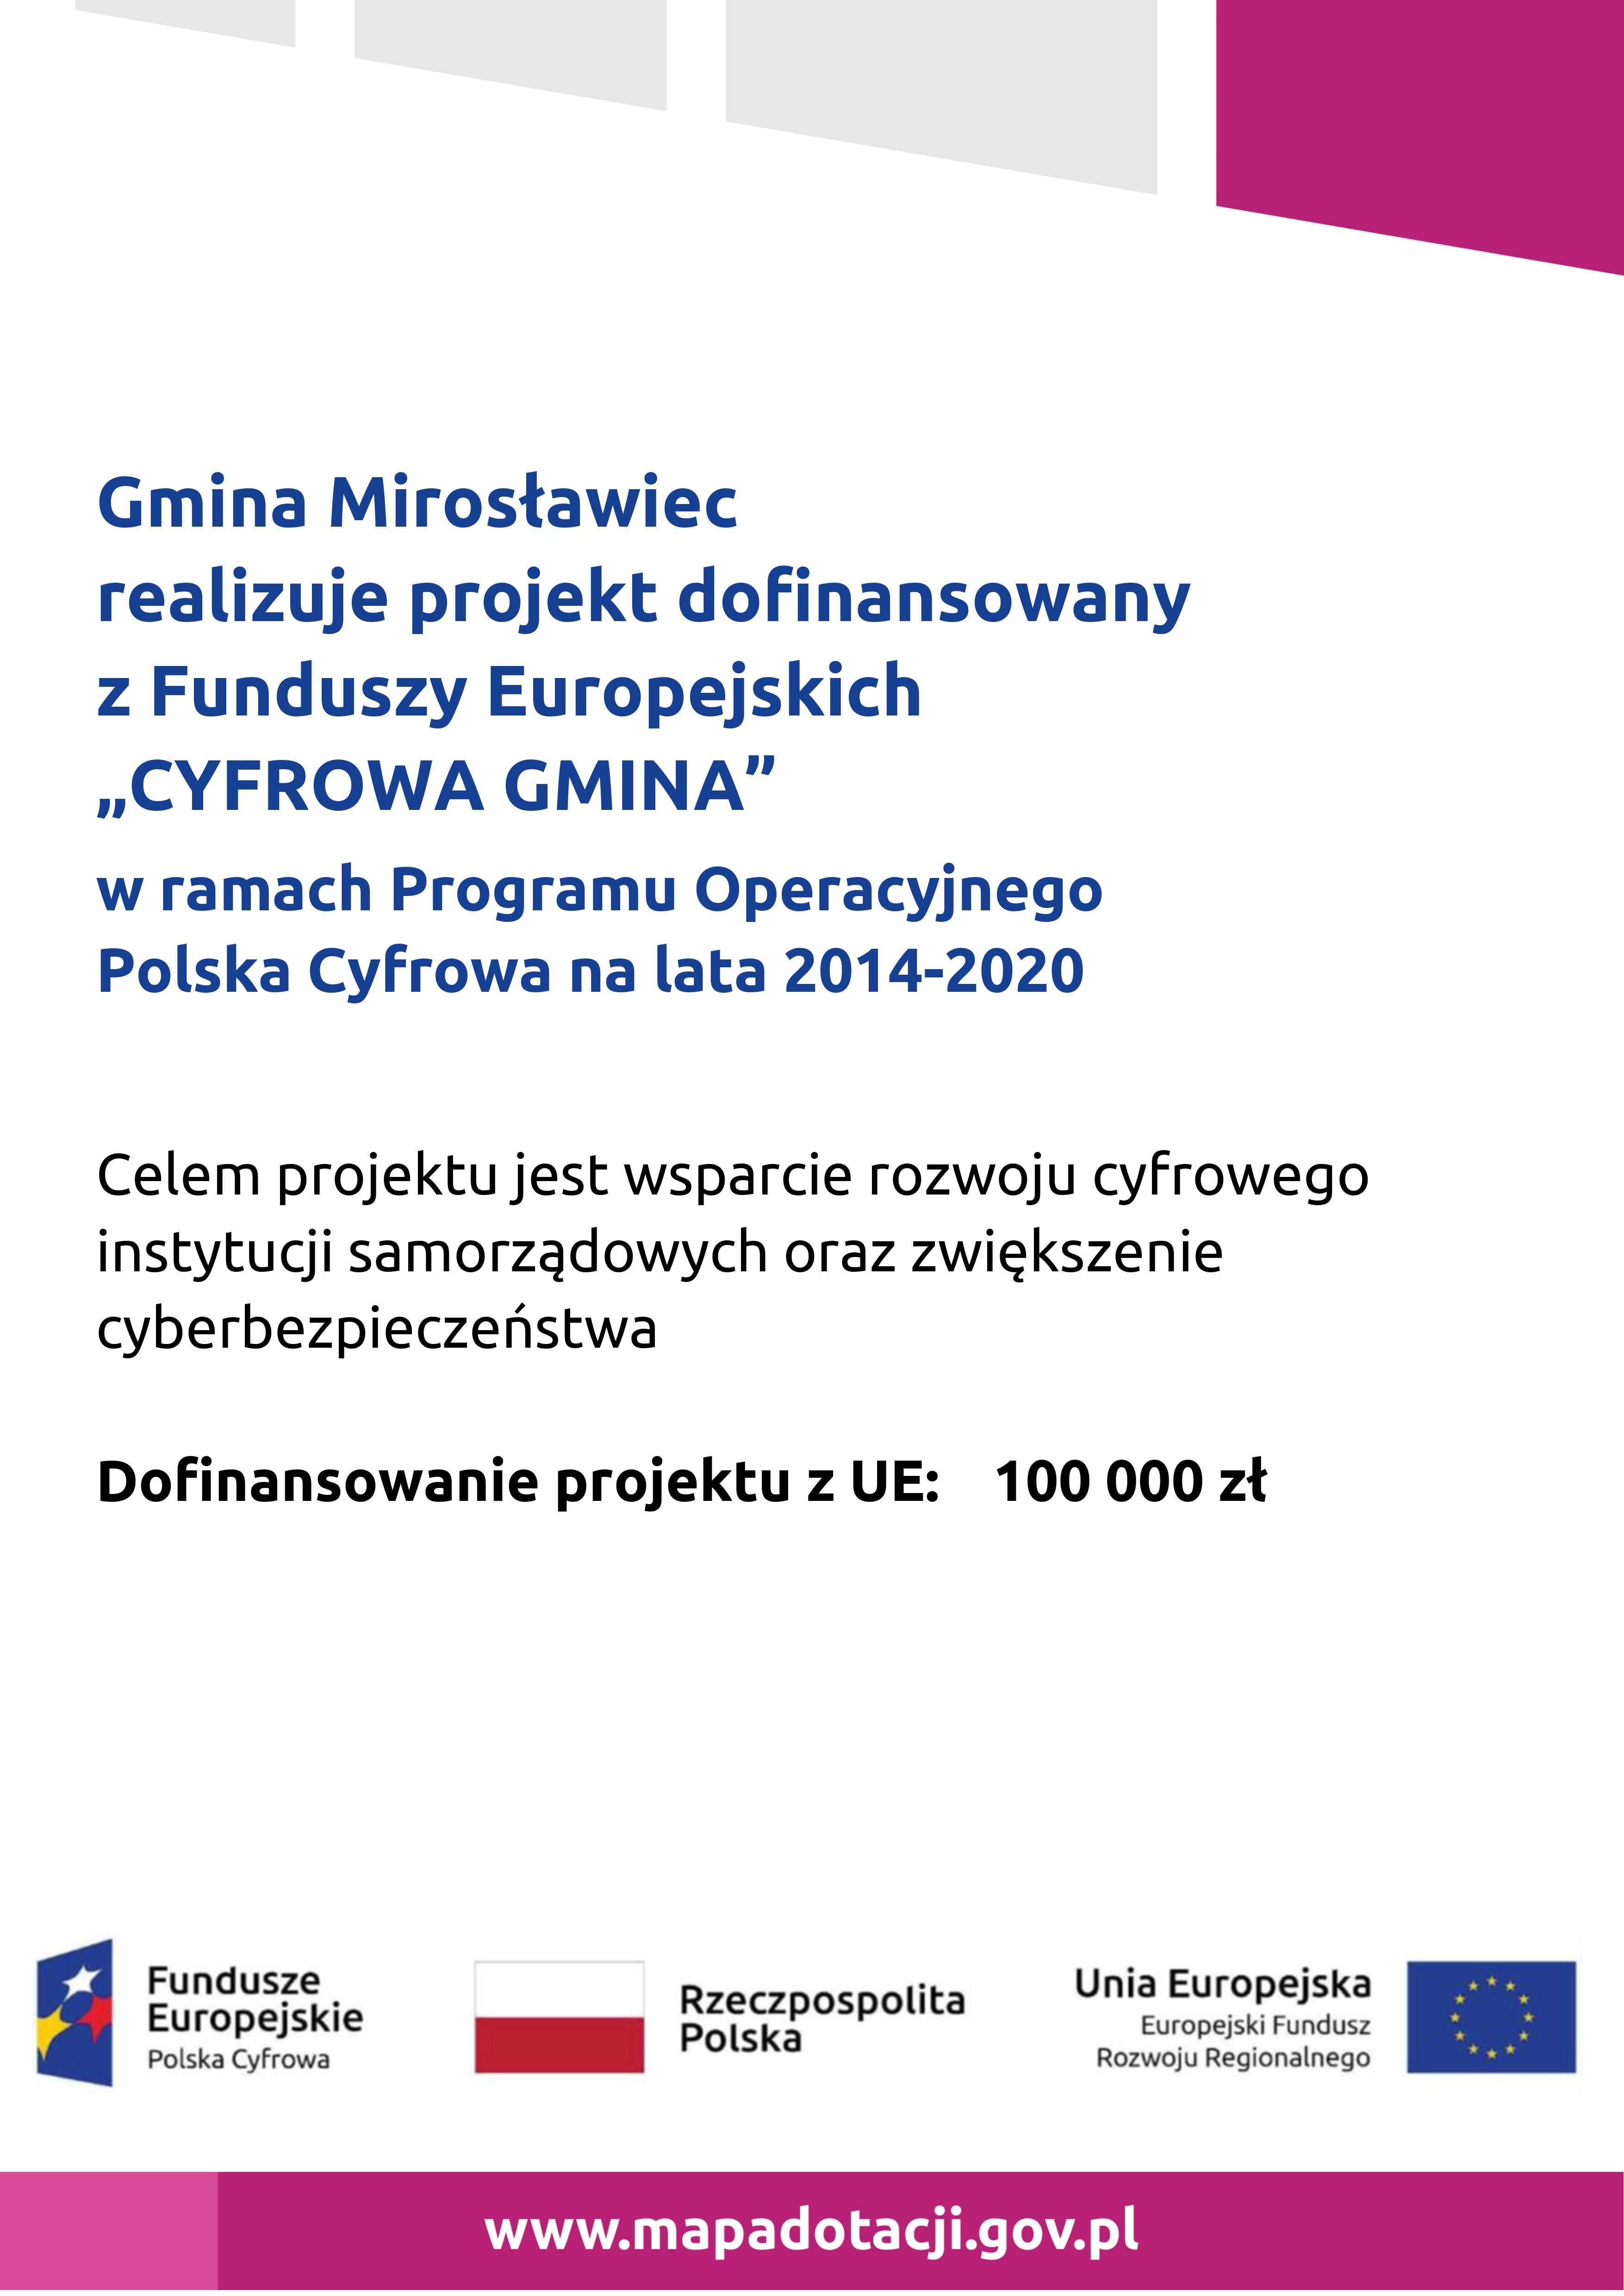 Gmina Mirosławiec realizuje projekt dofinansowany z Funduszy Europejskich  „CYFROWA GMINA” w ramach Programu Operacyjnego  Polska Cyfrowa na lata 2014-2020  Celem projektu jest wsparcie rozwoju cyfrowego instytucji samorządowych oraz zwiększenie cyberbezpieczeństwa  Dofinansowanie projektu z UE: 100 000 zł, 